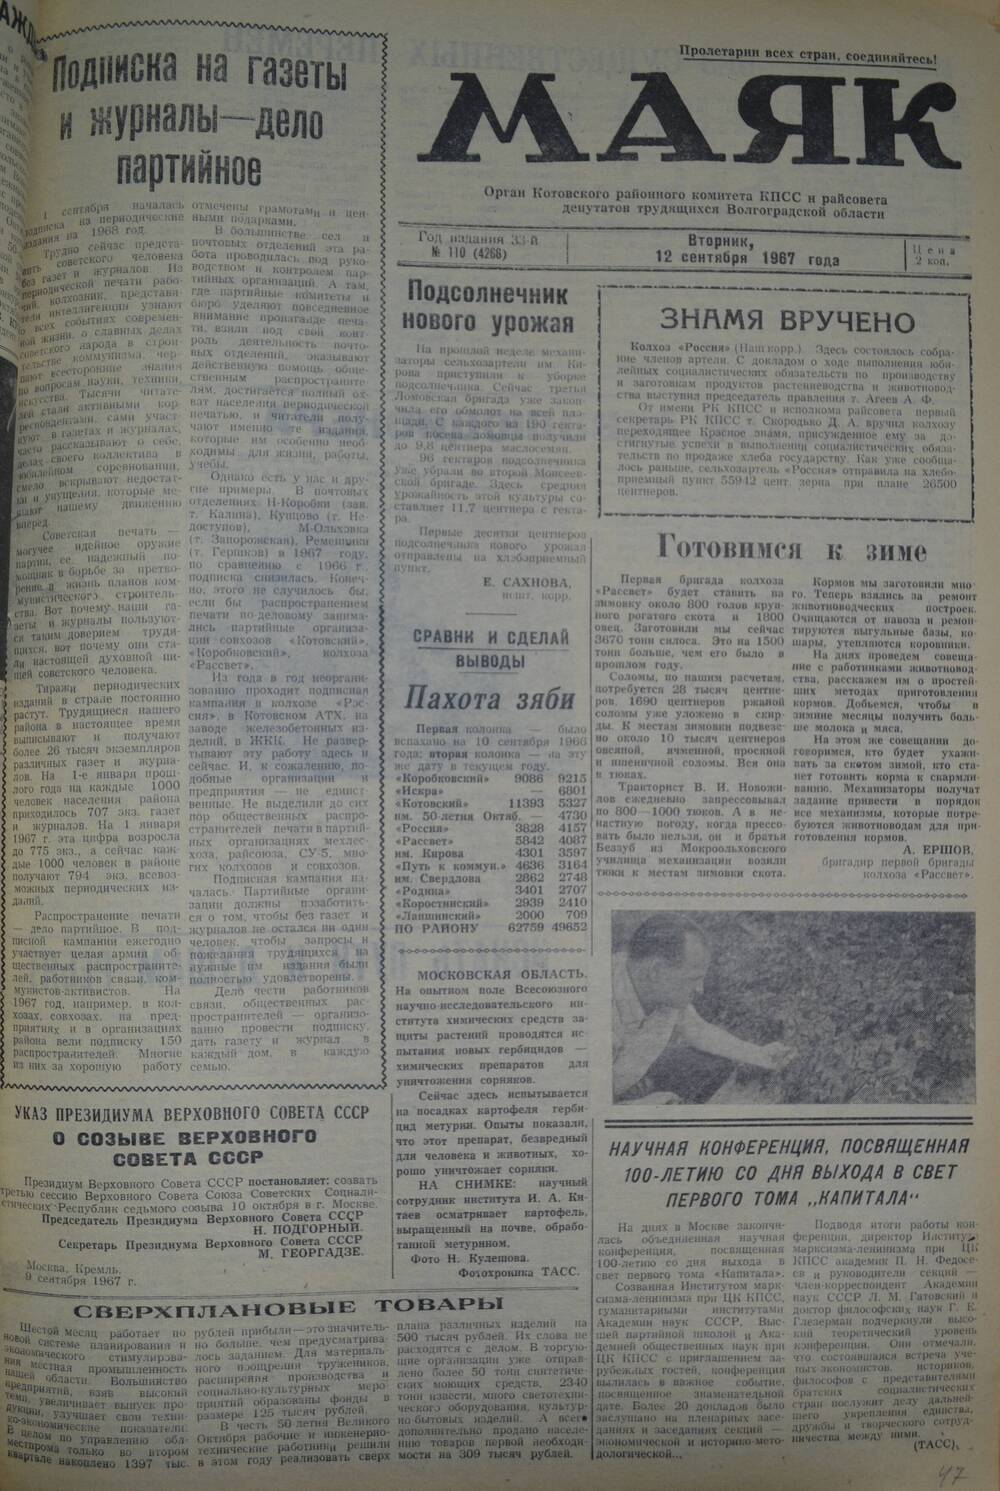 Газета Маяк № 110 (4266). Вторник, 12 сентября 1967 года.